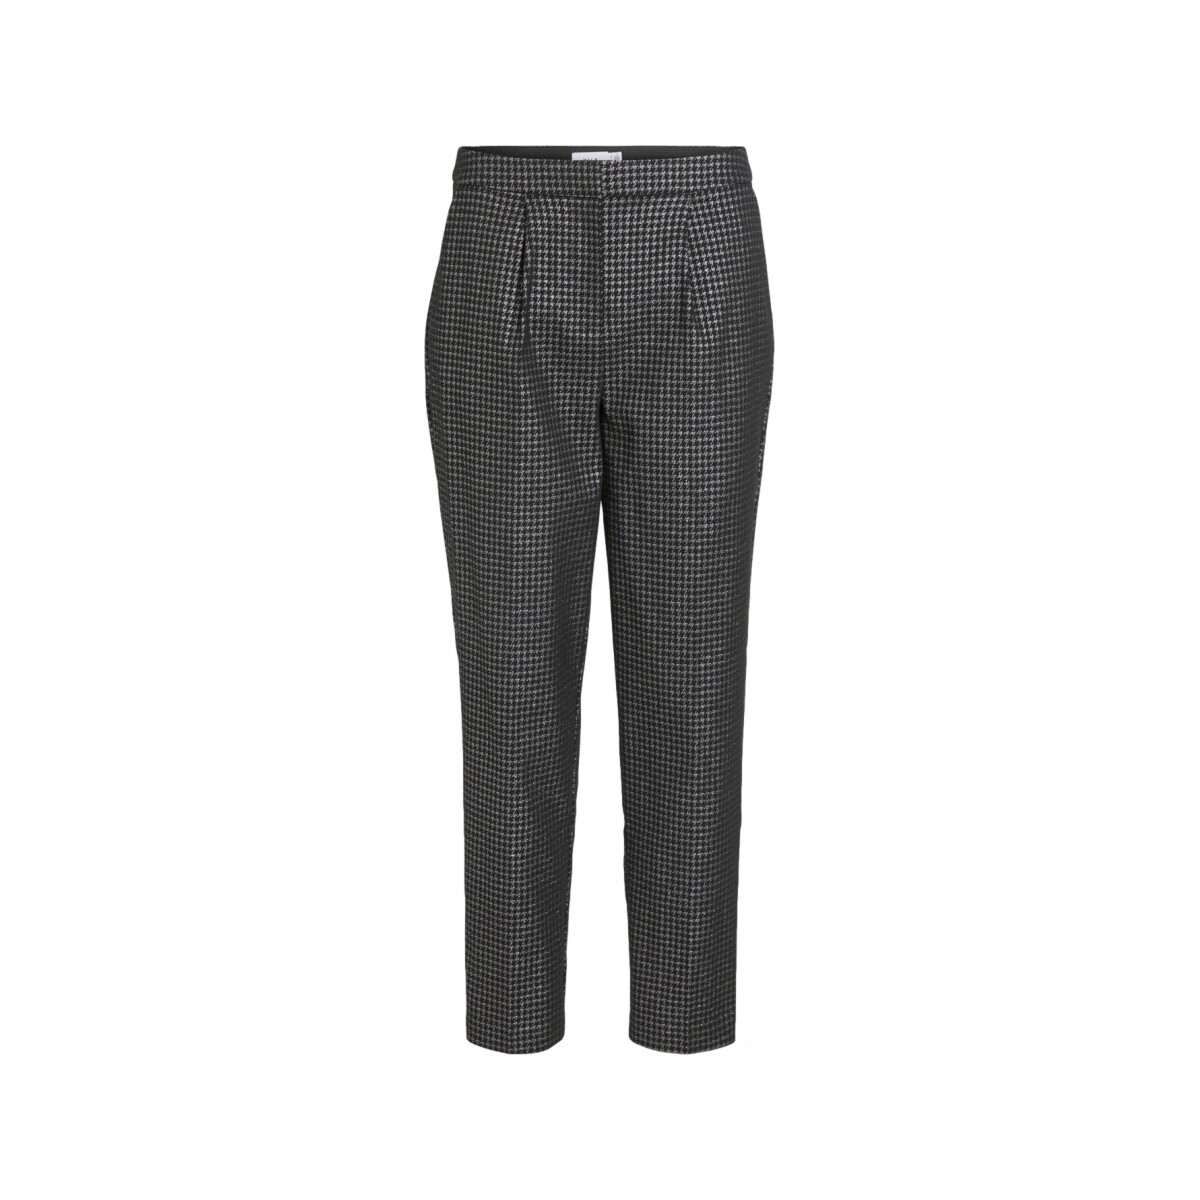 textil Mujer Pantalones Vila Trousers Shine 7/8 - Black/silver Negro